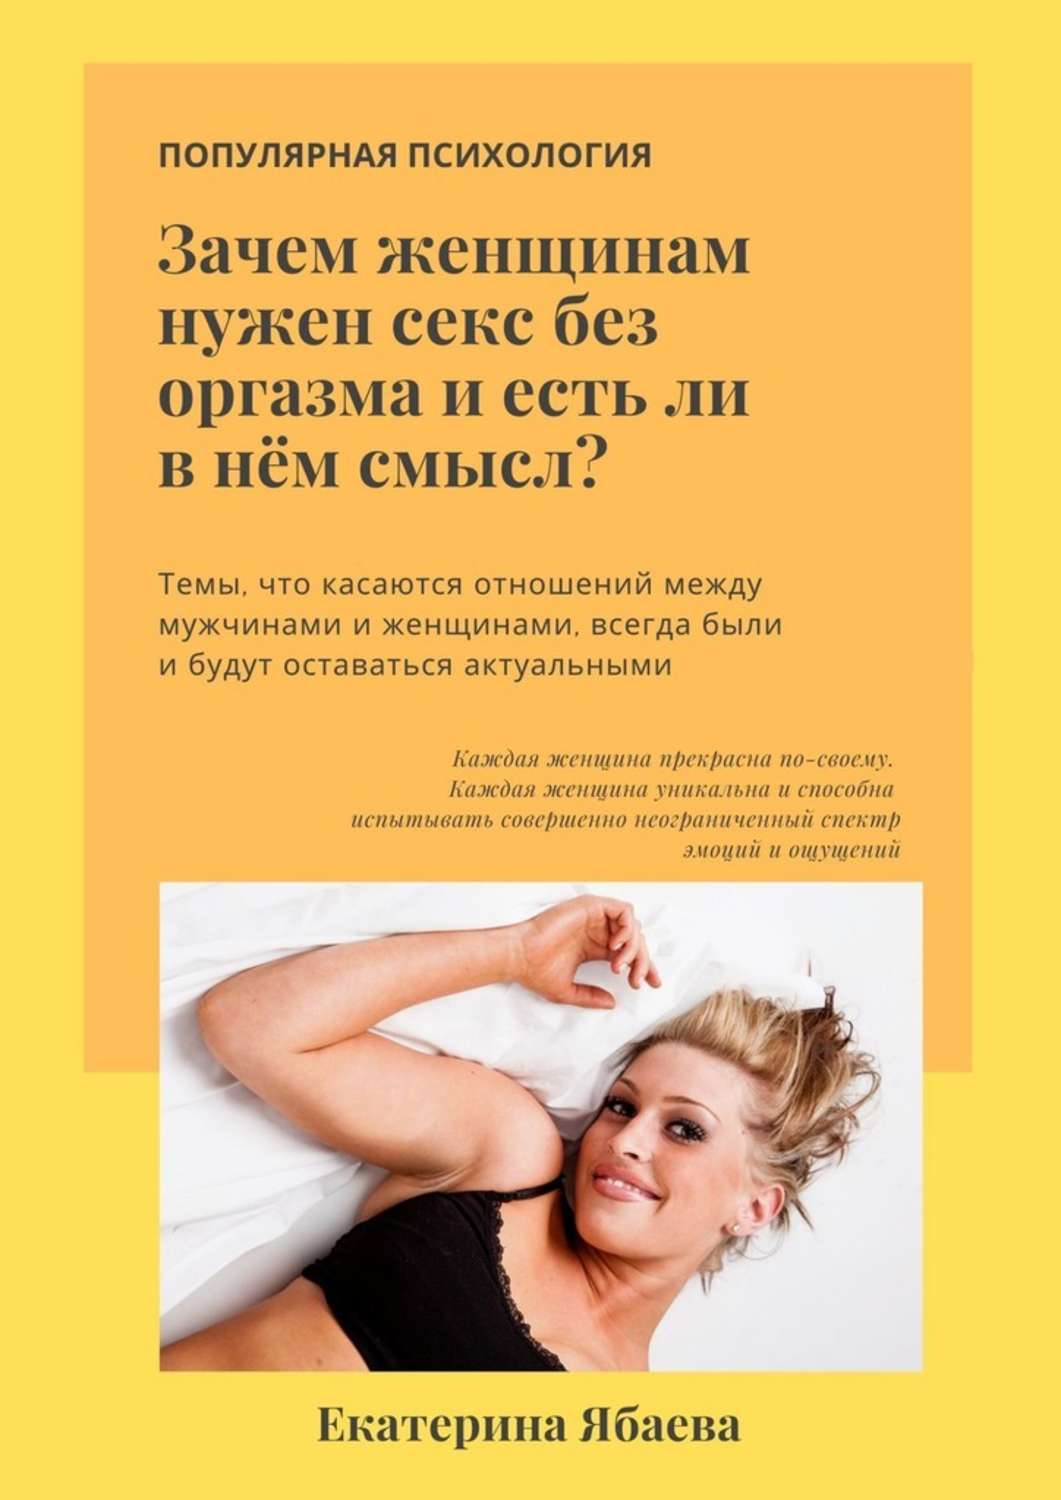 Секс нужен алиса (45 фото) - скачать картинки и порно фото city-lawyers.ru